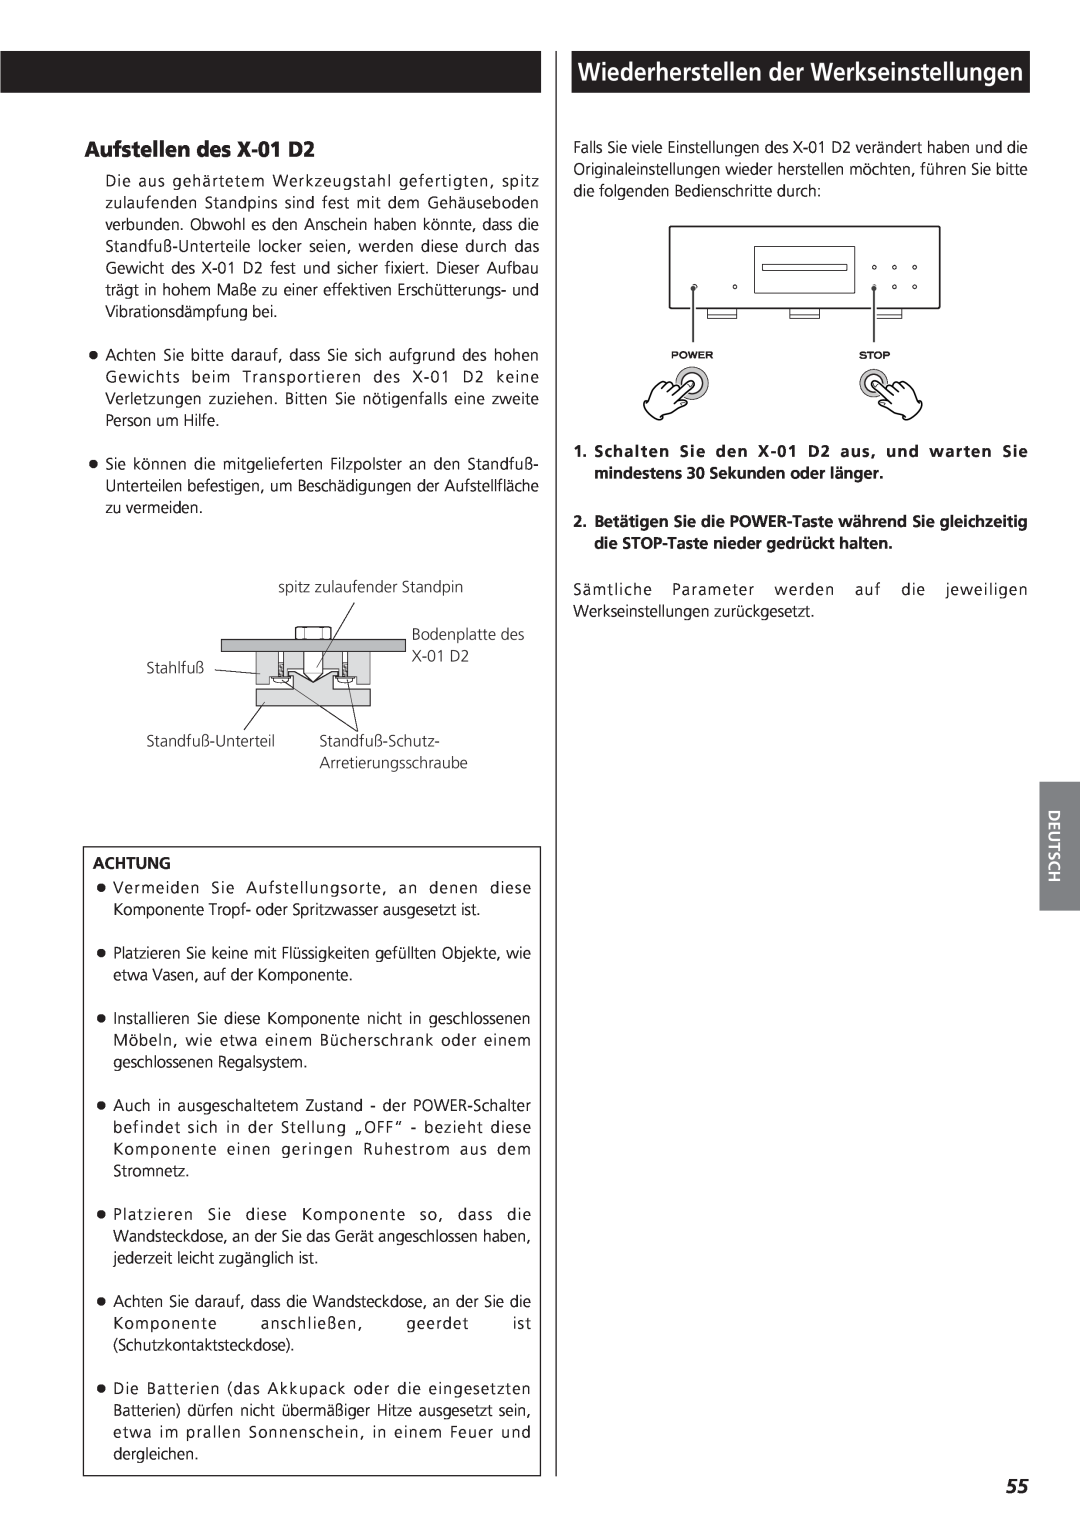 Teac X-01 D2 owner manual Wiederherstellen der Werkseinstellungen, Aufstellen des X-01D2, Deutsch 